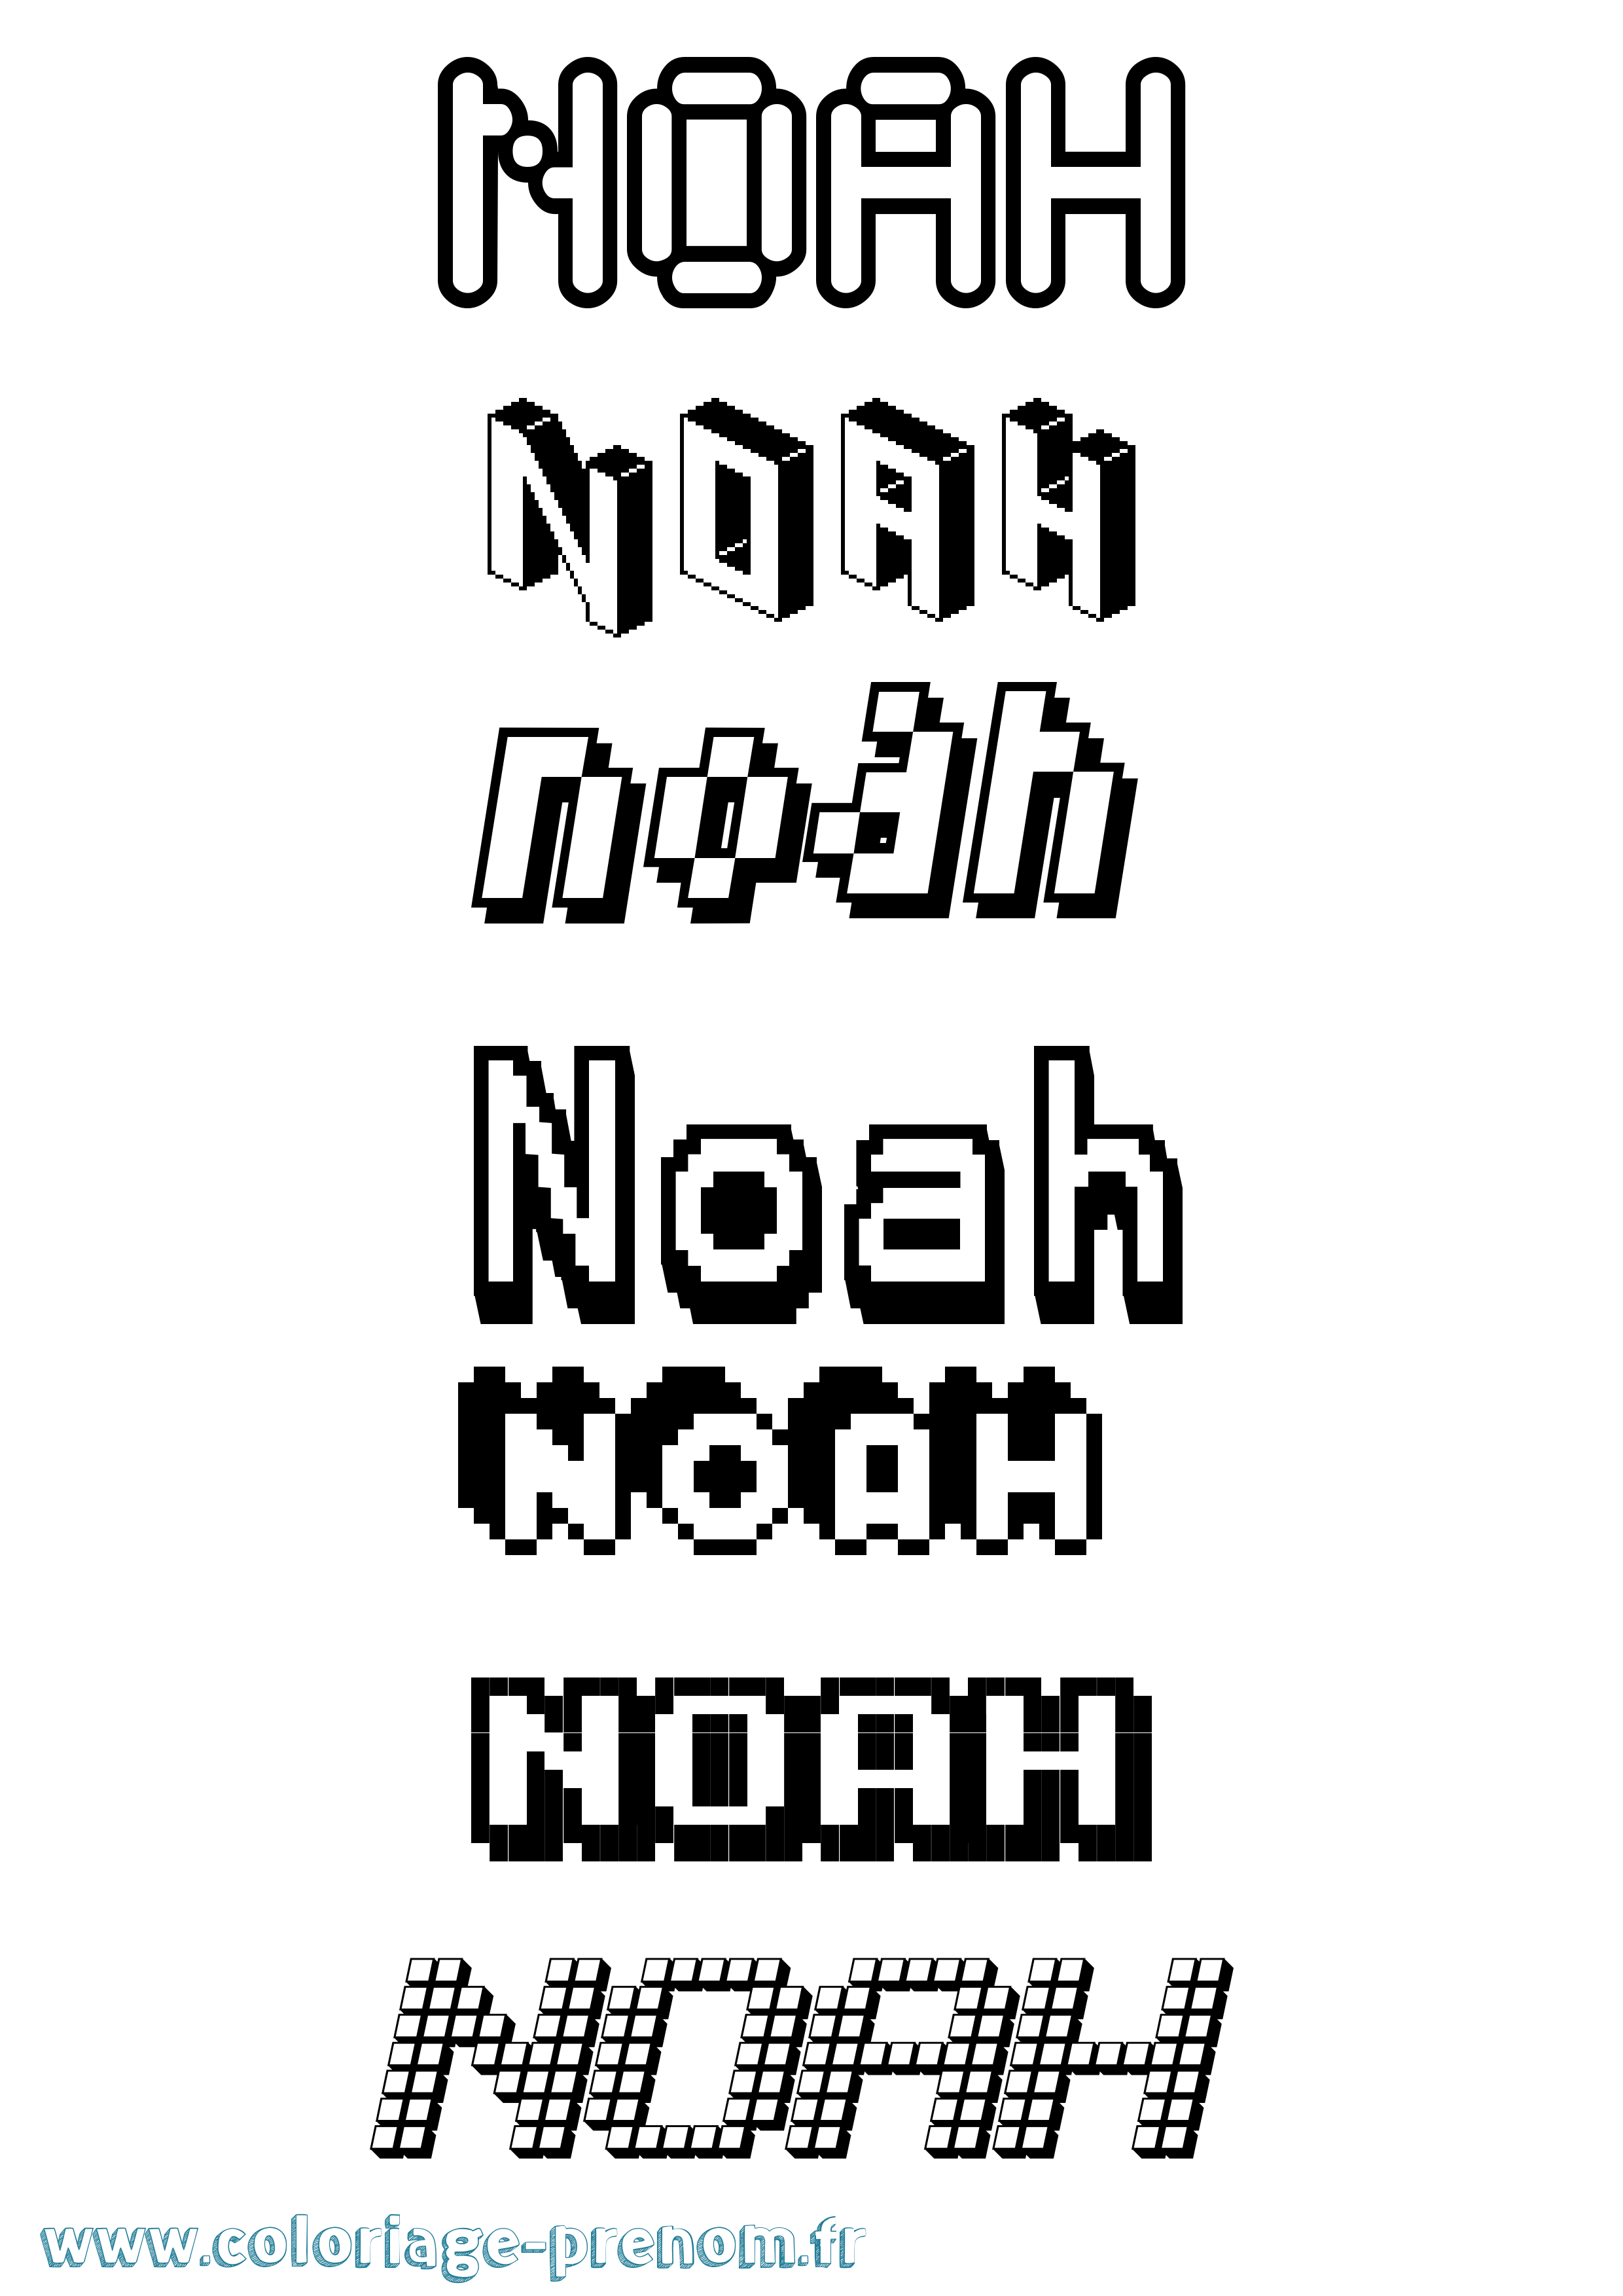 Coloriage prénom Noah Pixel